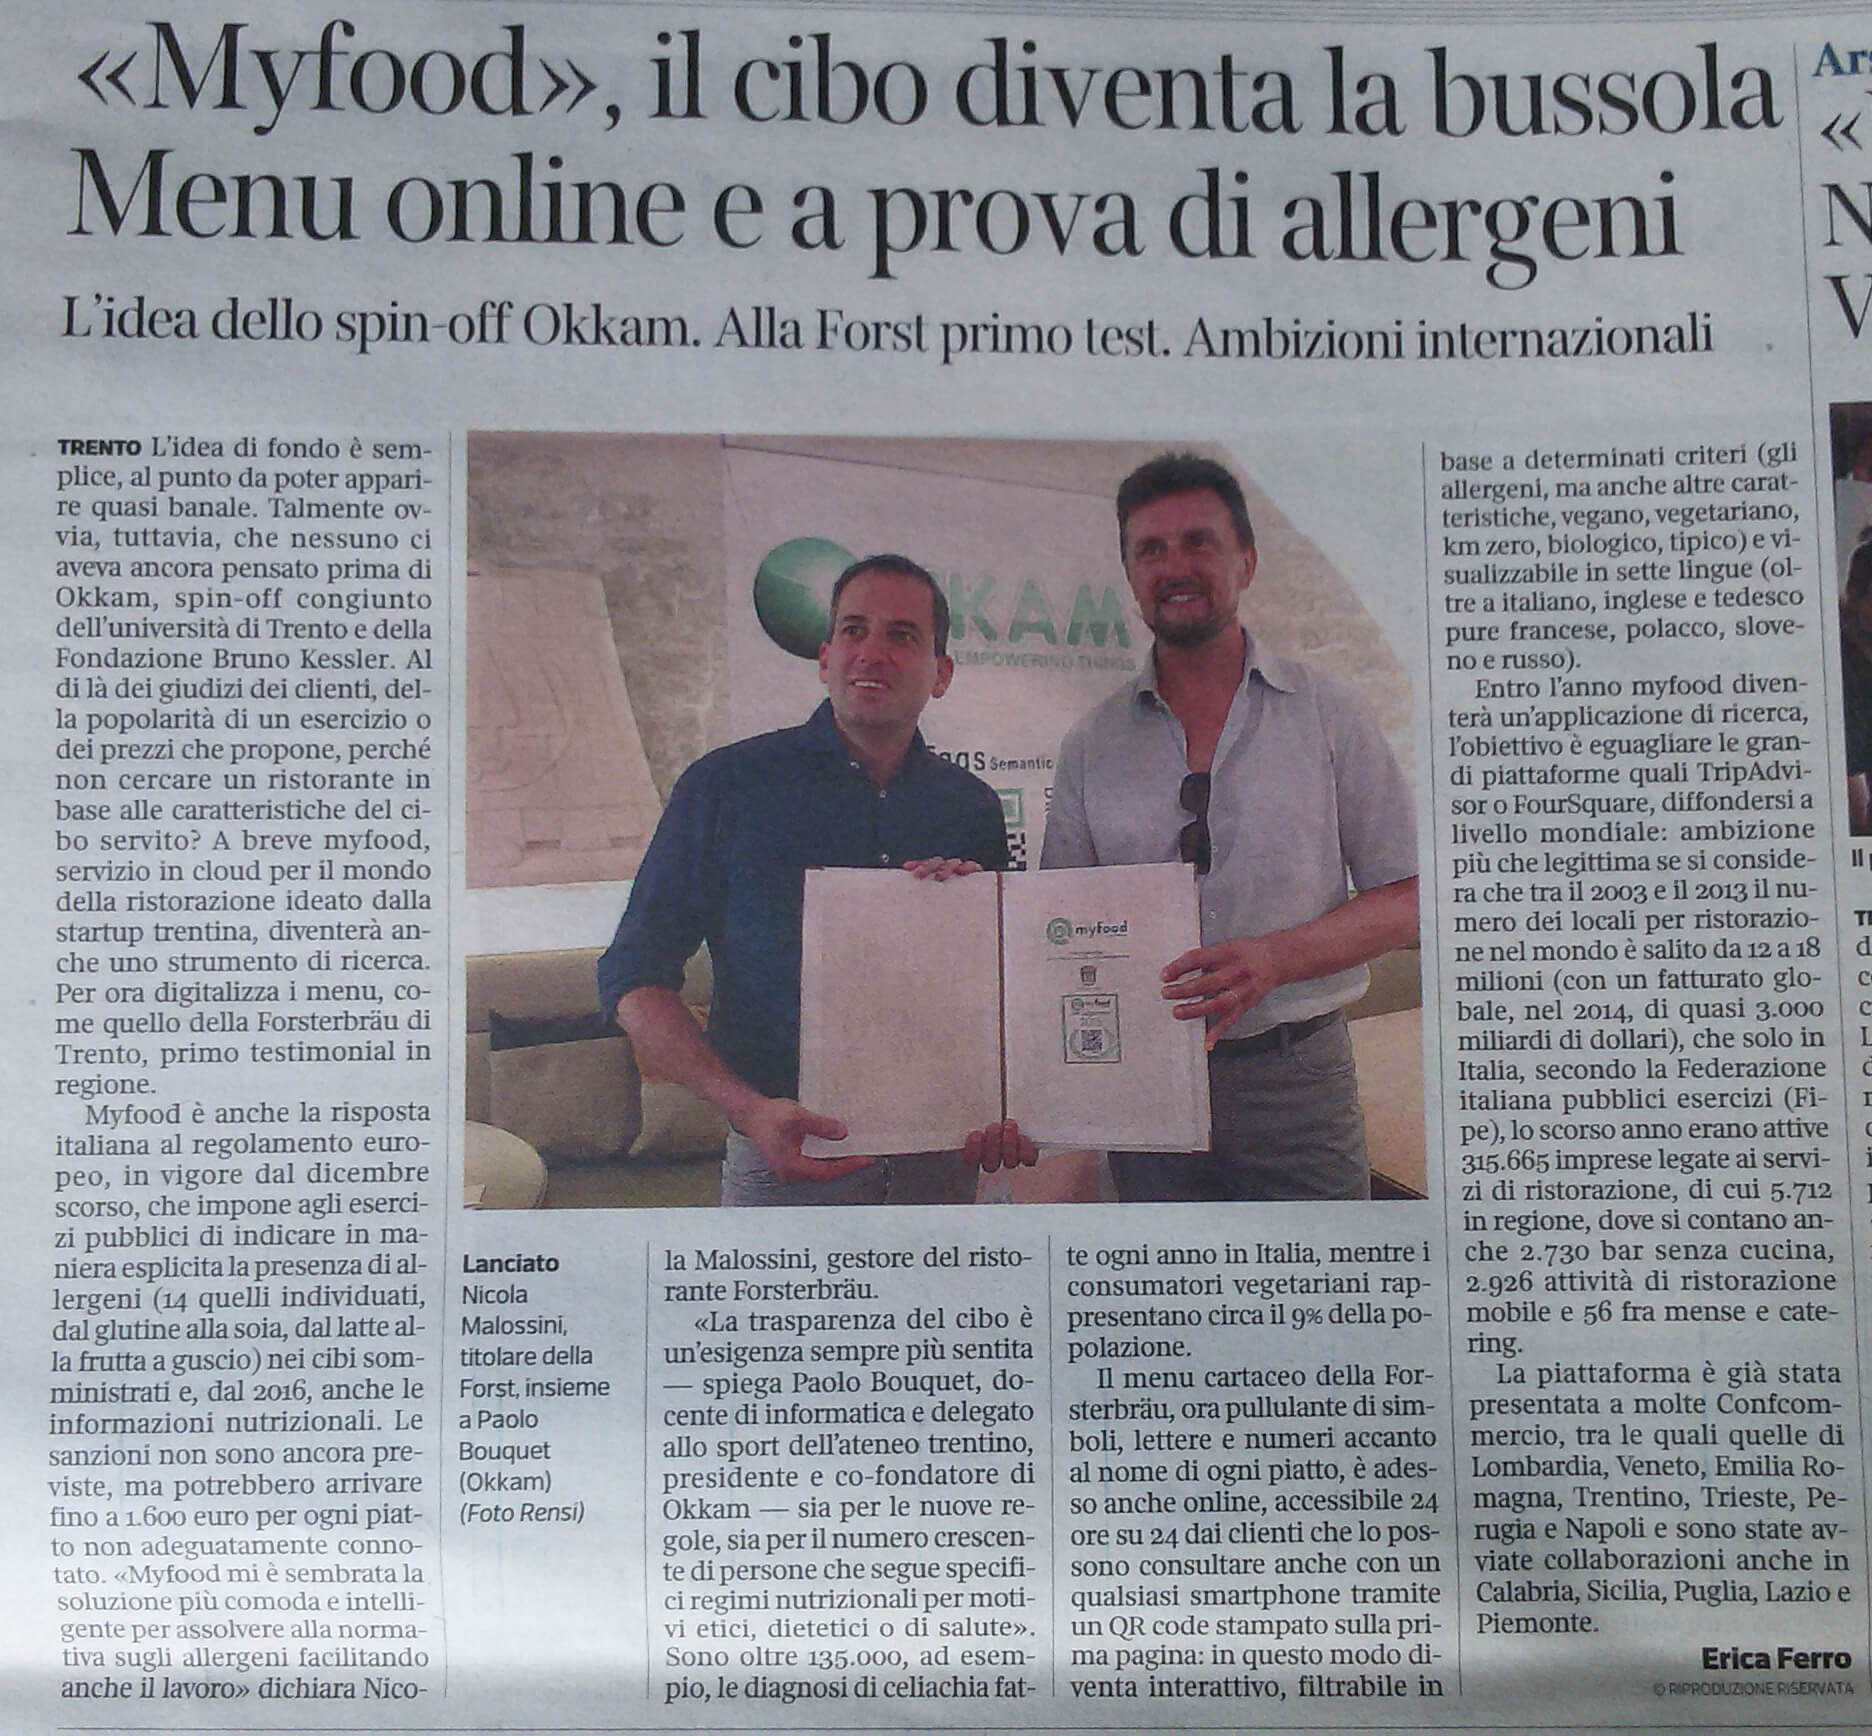 Nicola Malossini di Forst e Paolo Bouquet di OKKAM presentano il menù digitale accessibile tramite QR code myfood